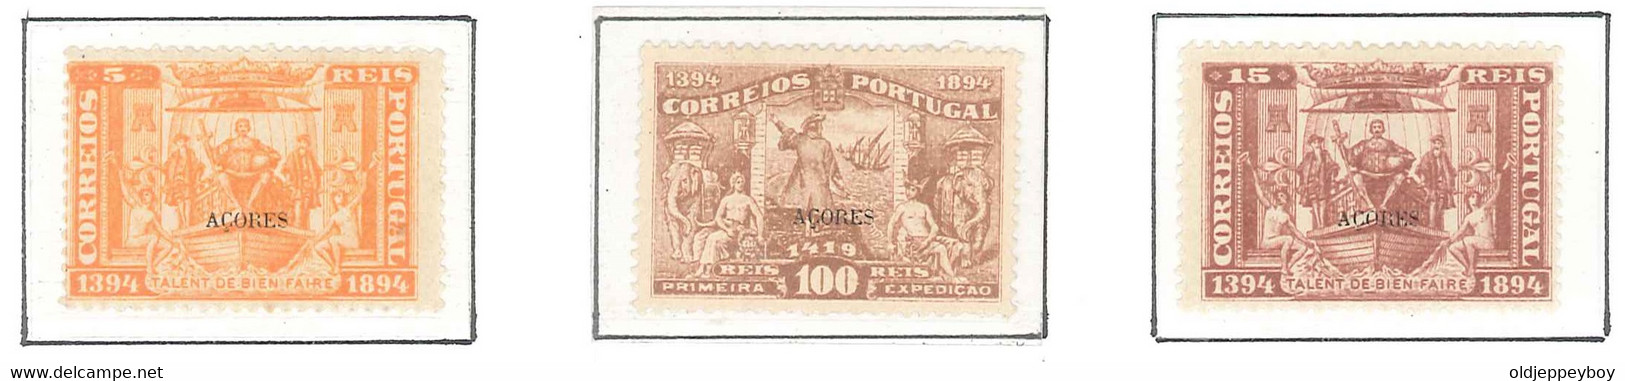 1894 Portugal  5º Centenário Nascimento Infante D. Henrique MH/MLH/MNH ORIGINAL GUM 5, 15, 100 Rs AZORES AÇORES  OVPT - Erforscher